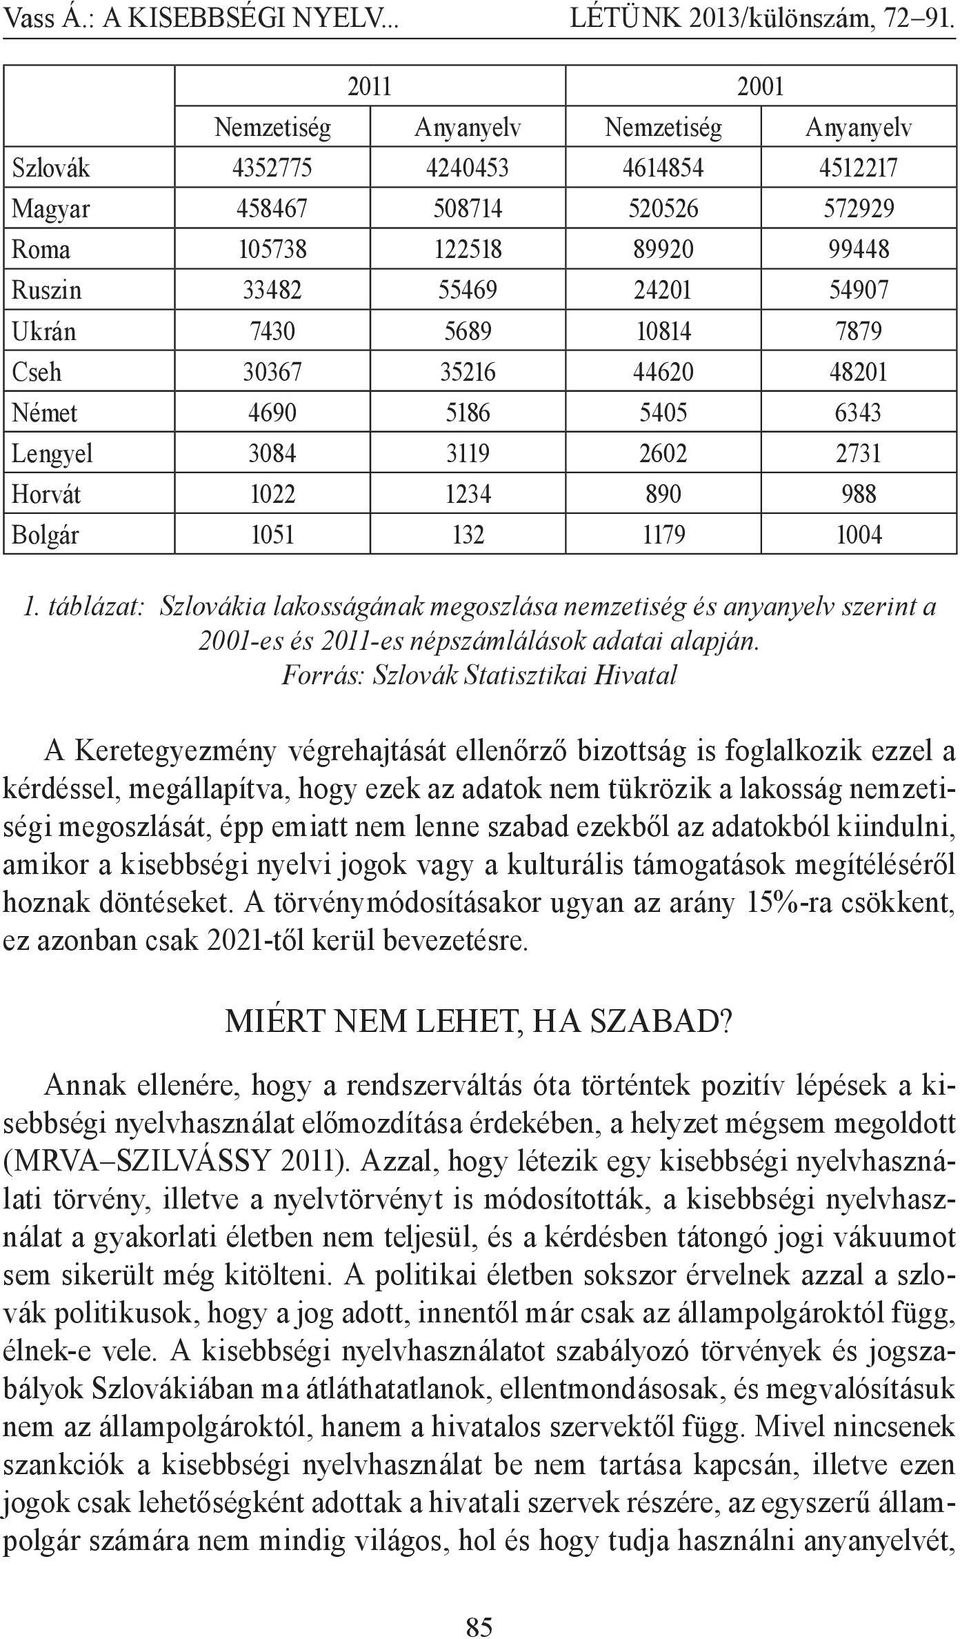 táblázat: Szlovákia lakosságának megoszlása nemzetiség és anyanyelv szerint a 2001-es és 2011-es népszámlálások adatai alapján.